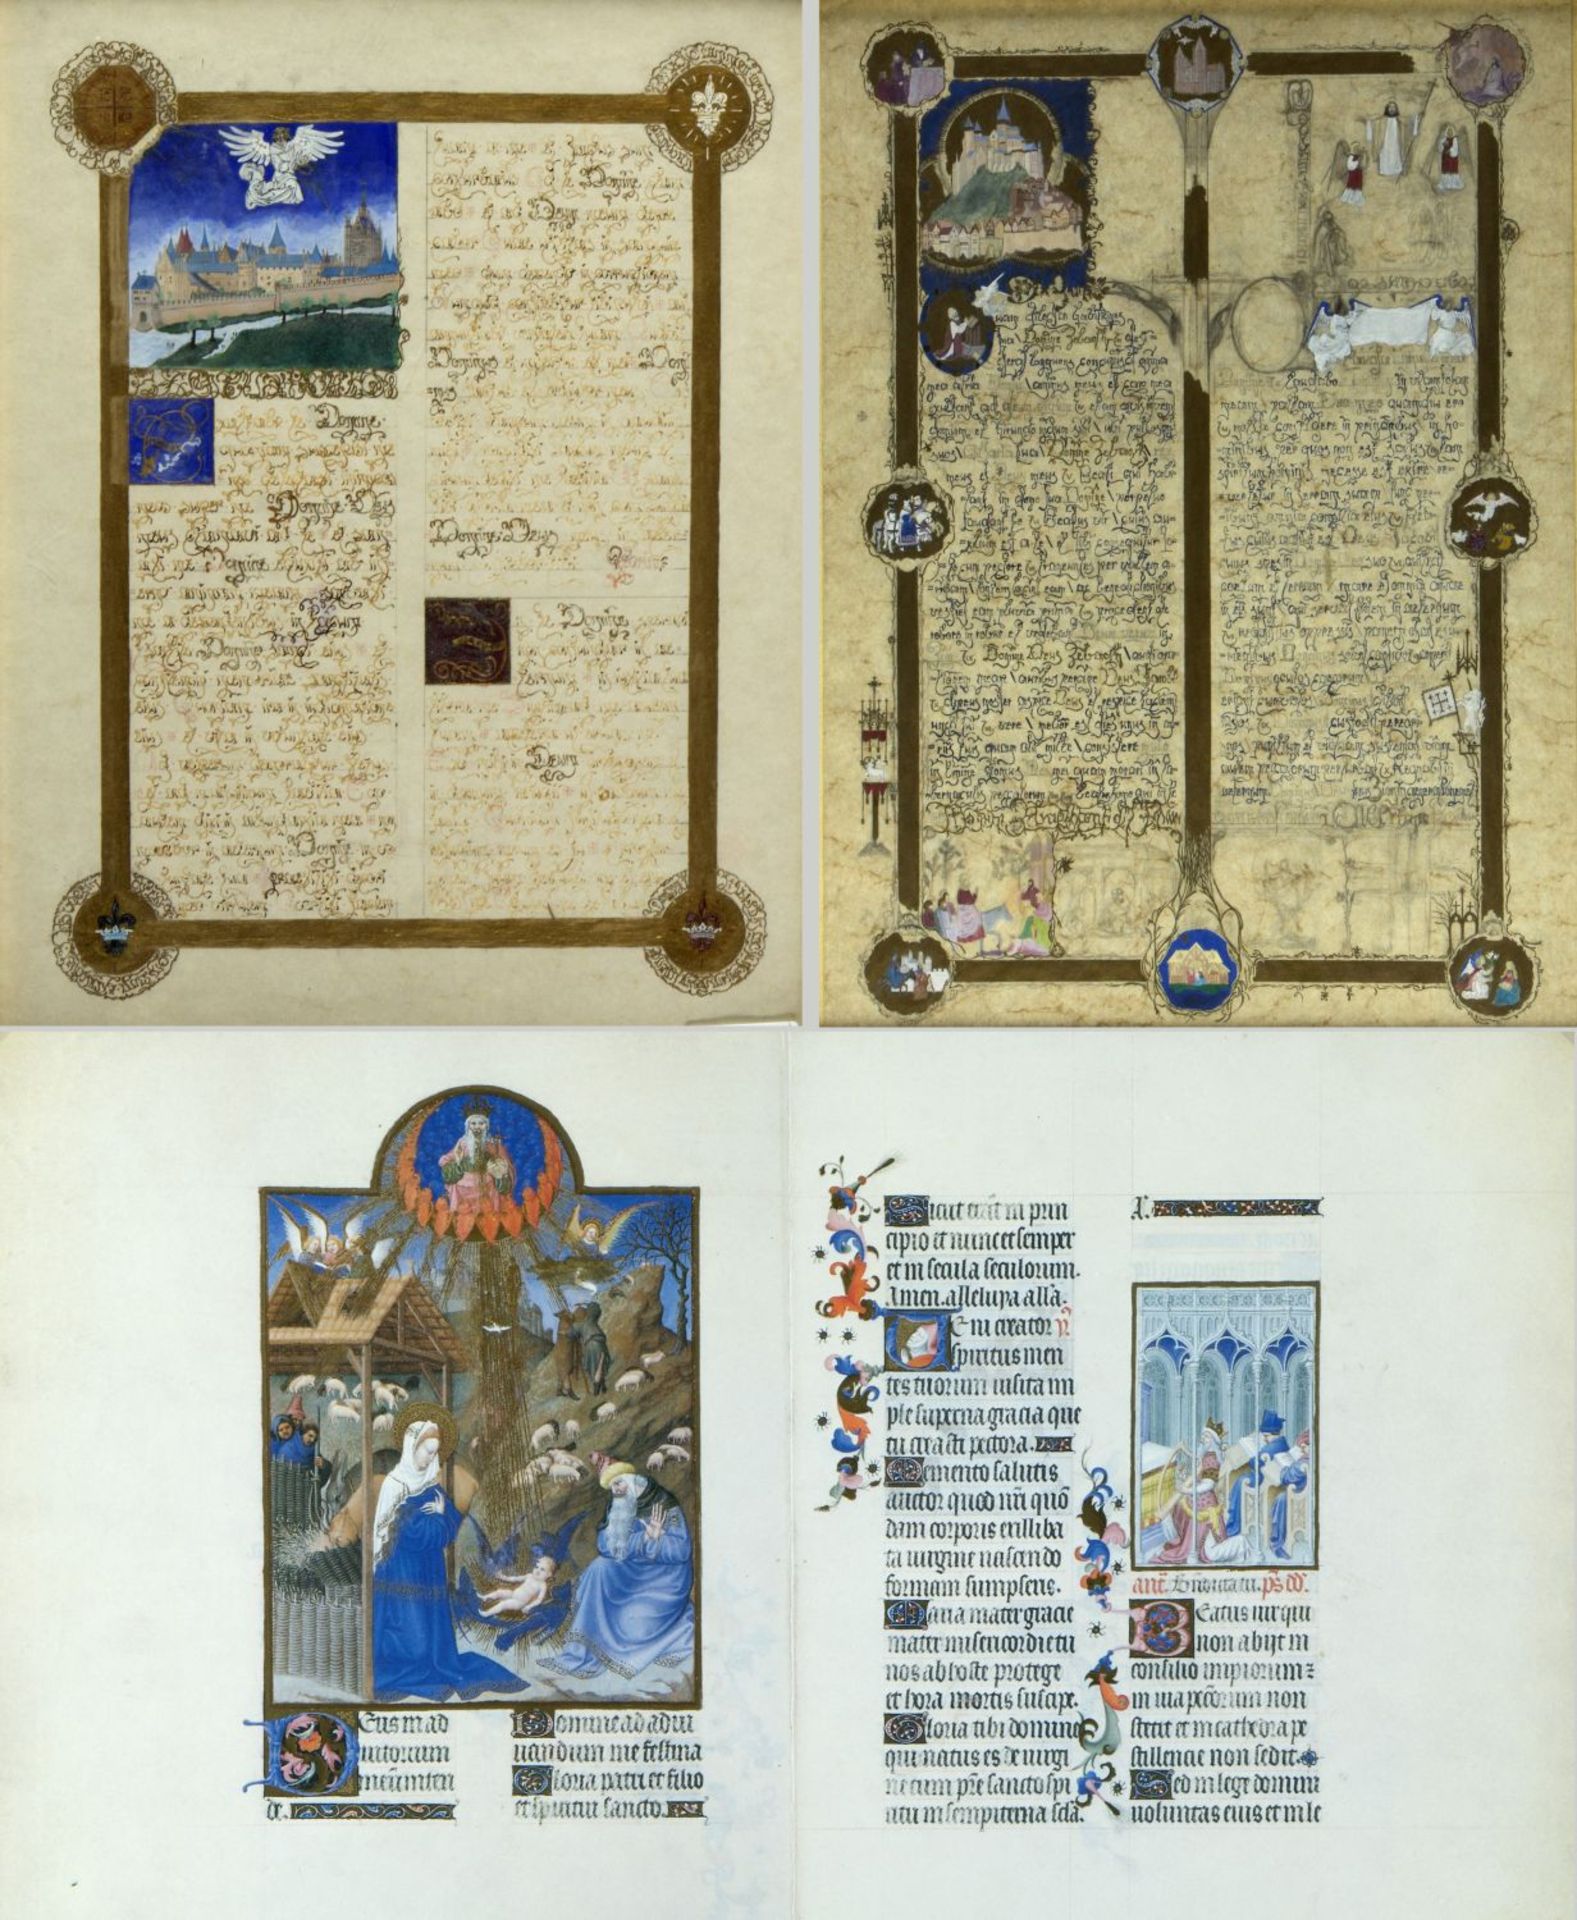 Frankreich, 20. Jh. Kopie eines Blattes aus einem Stundenbuch (?) mit der Darstellung des Mont Saint